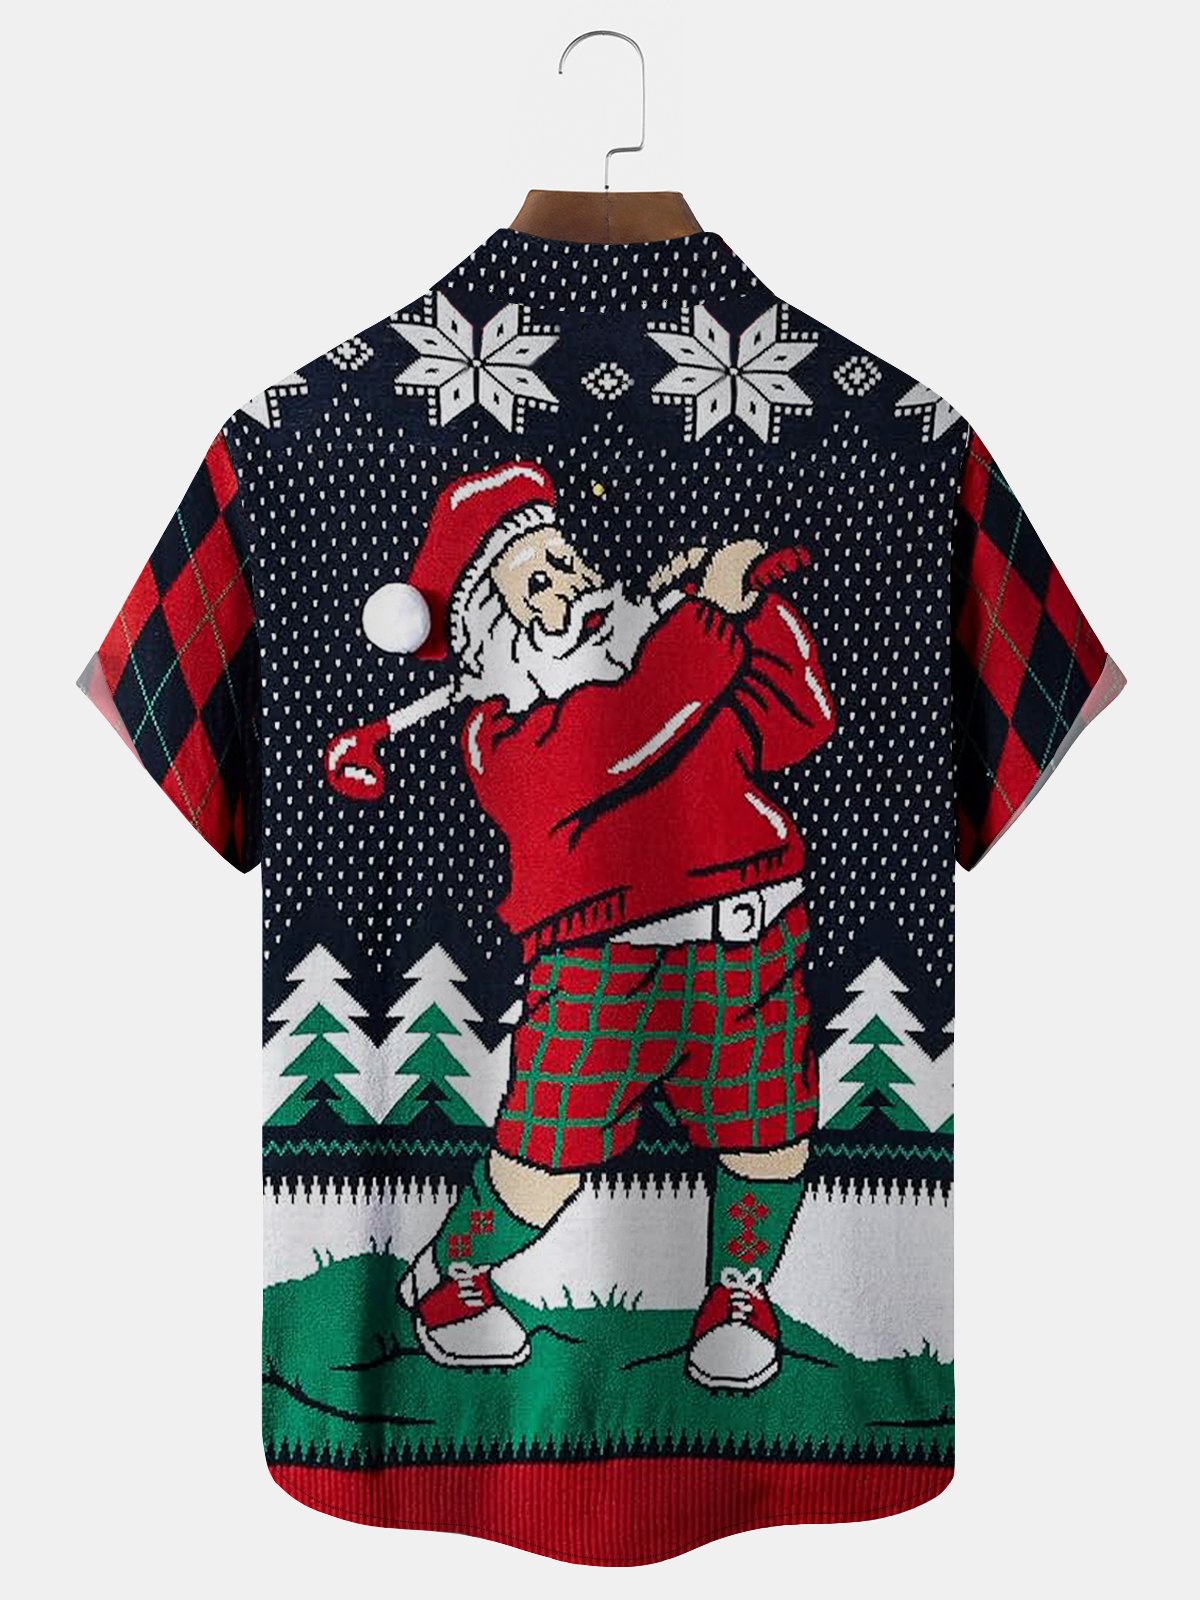 Royaura Christmas Holiday Blue Men's Fun Cartoon Santa Golf Art Check Camp Pocket Shirts Big Tall